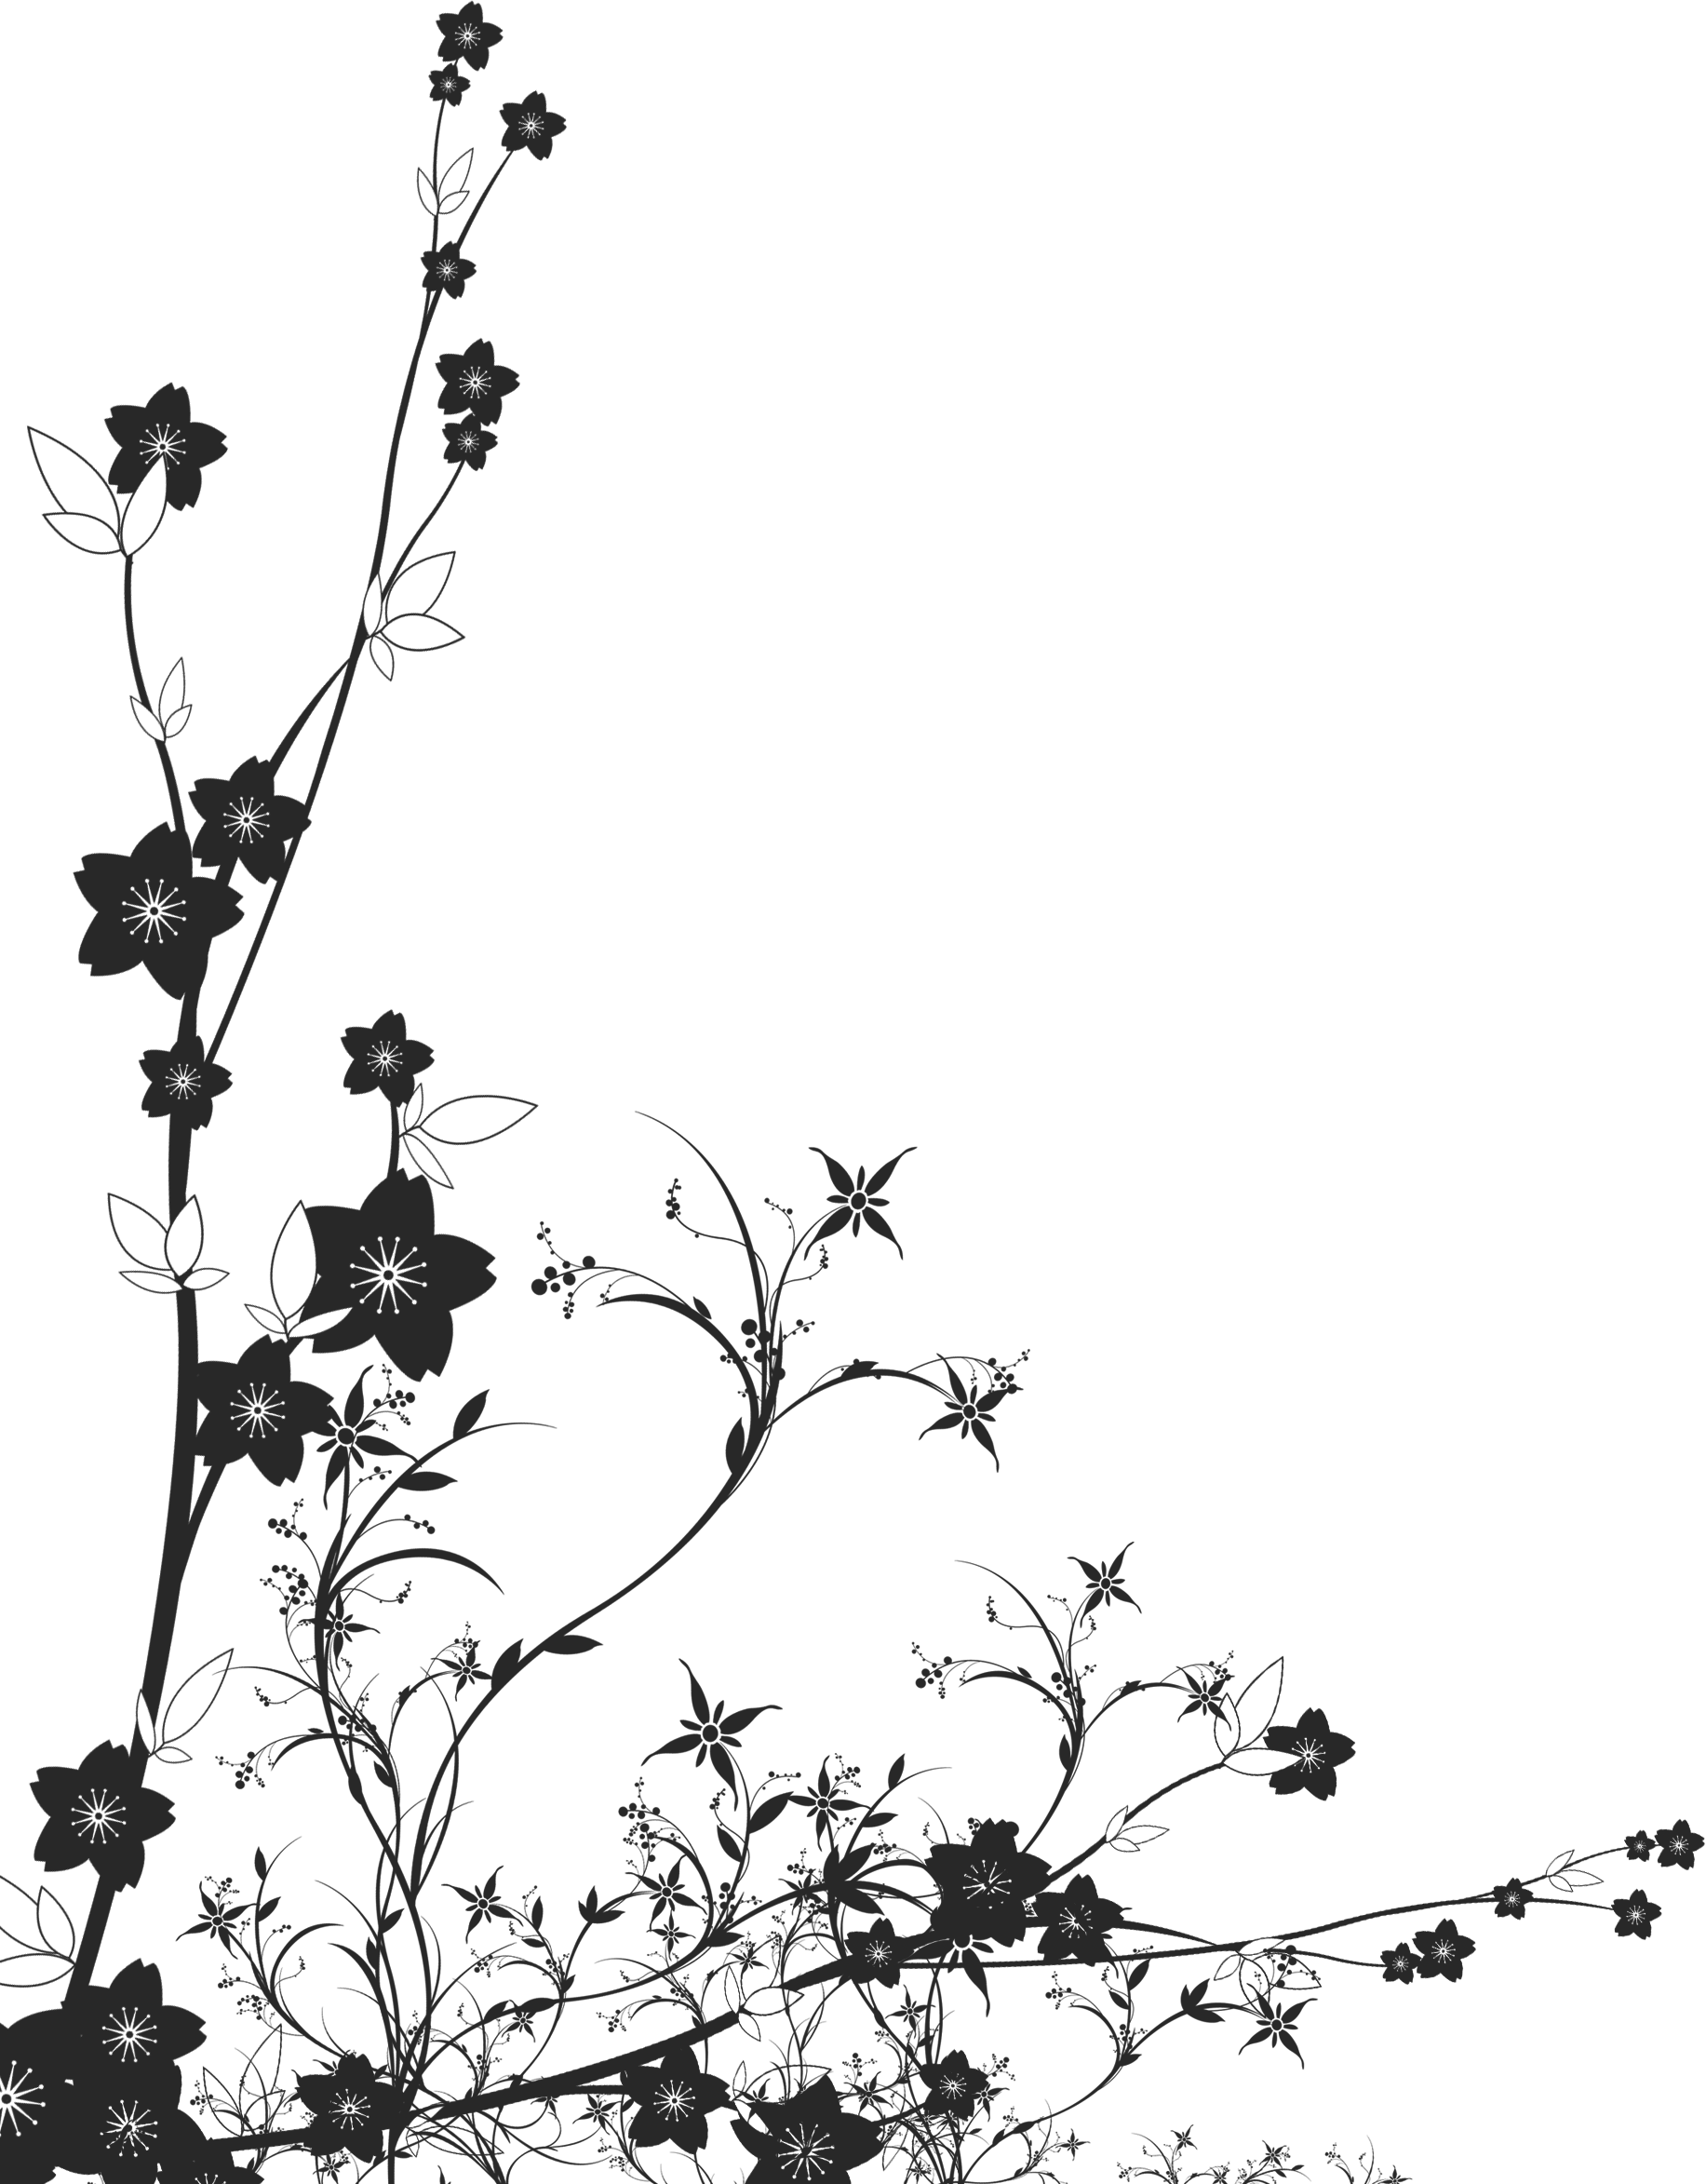 白黒 モノクロの花のイラスト フリー素材 ライン線 コーナー用no 901 白黒 茎葉 桜型